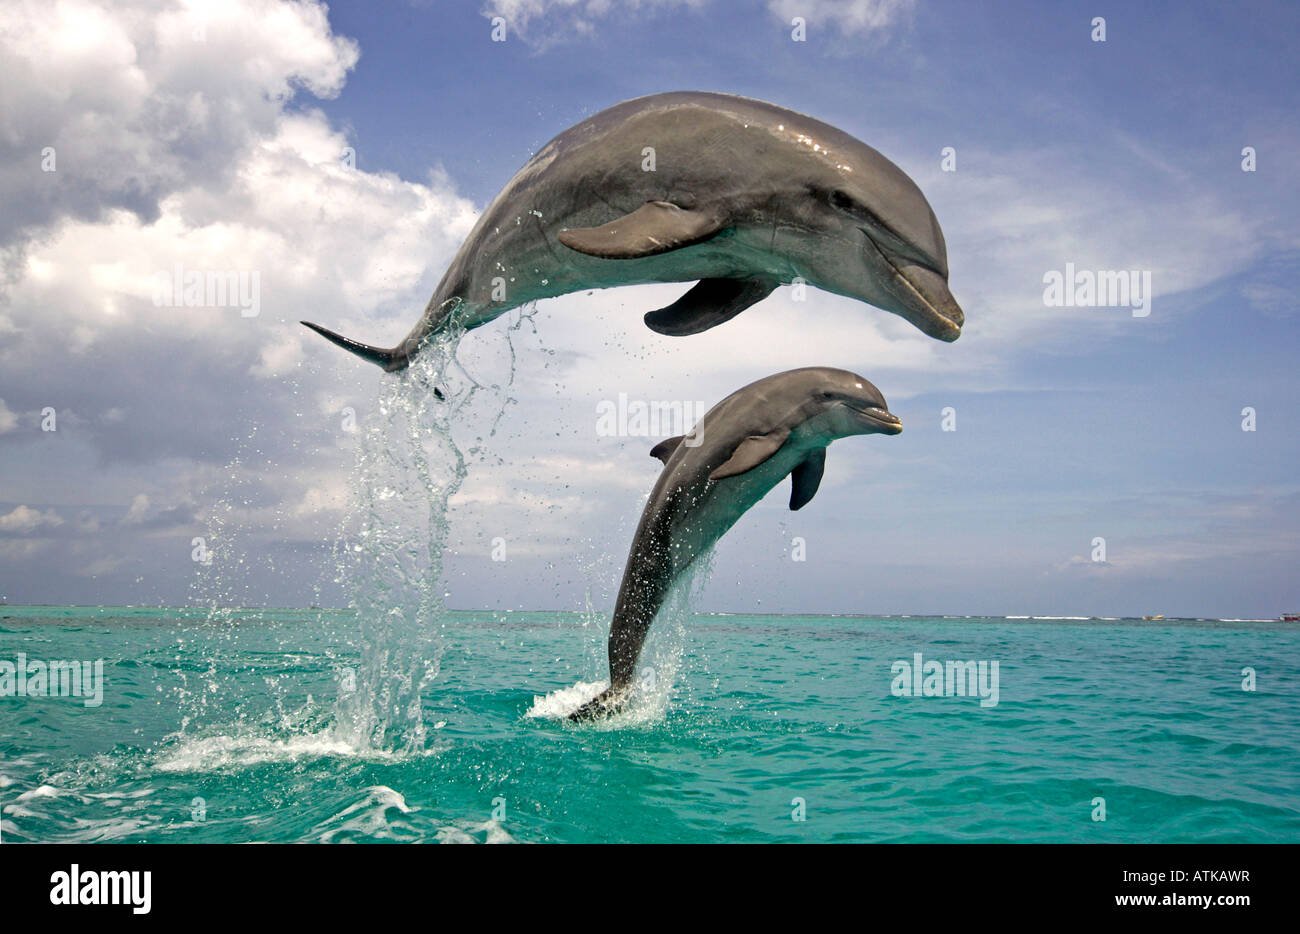 Дельфины Афалины